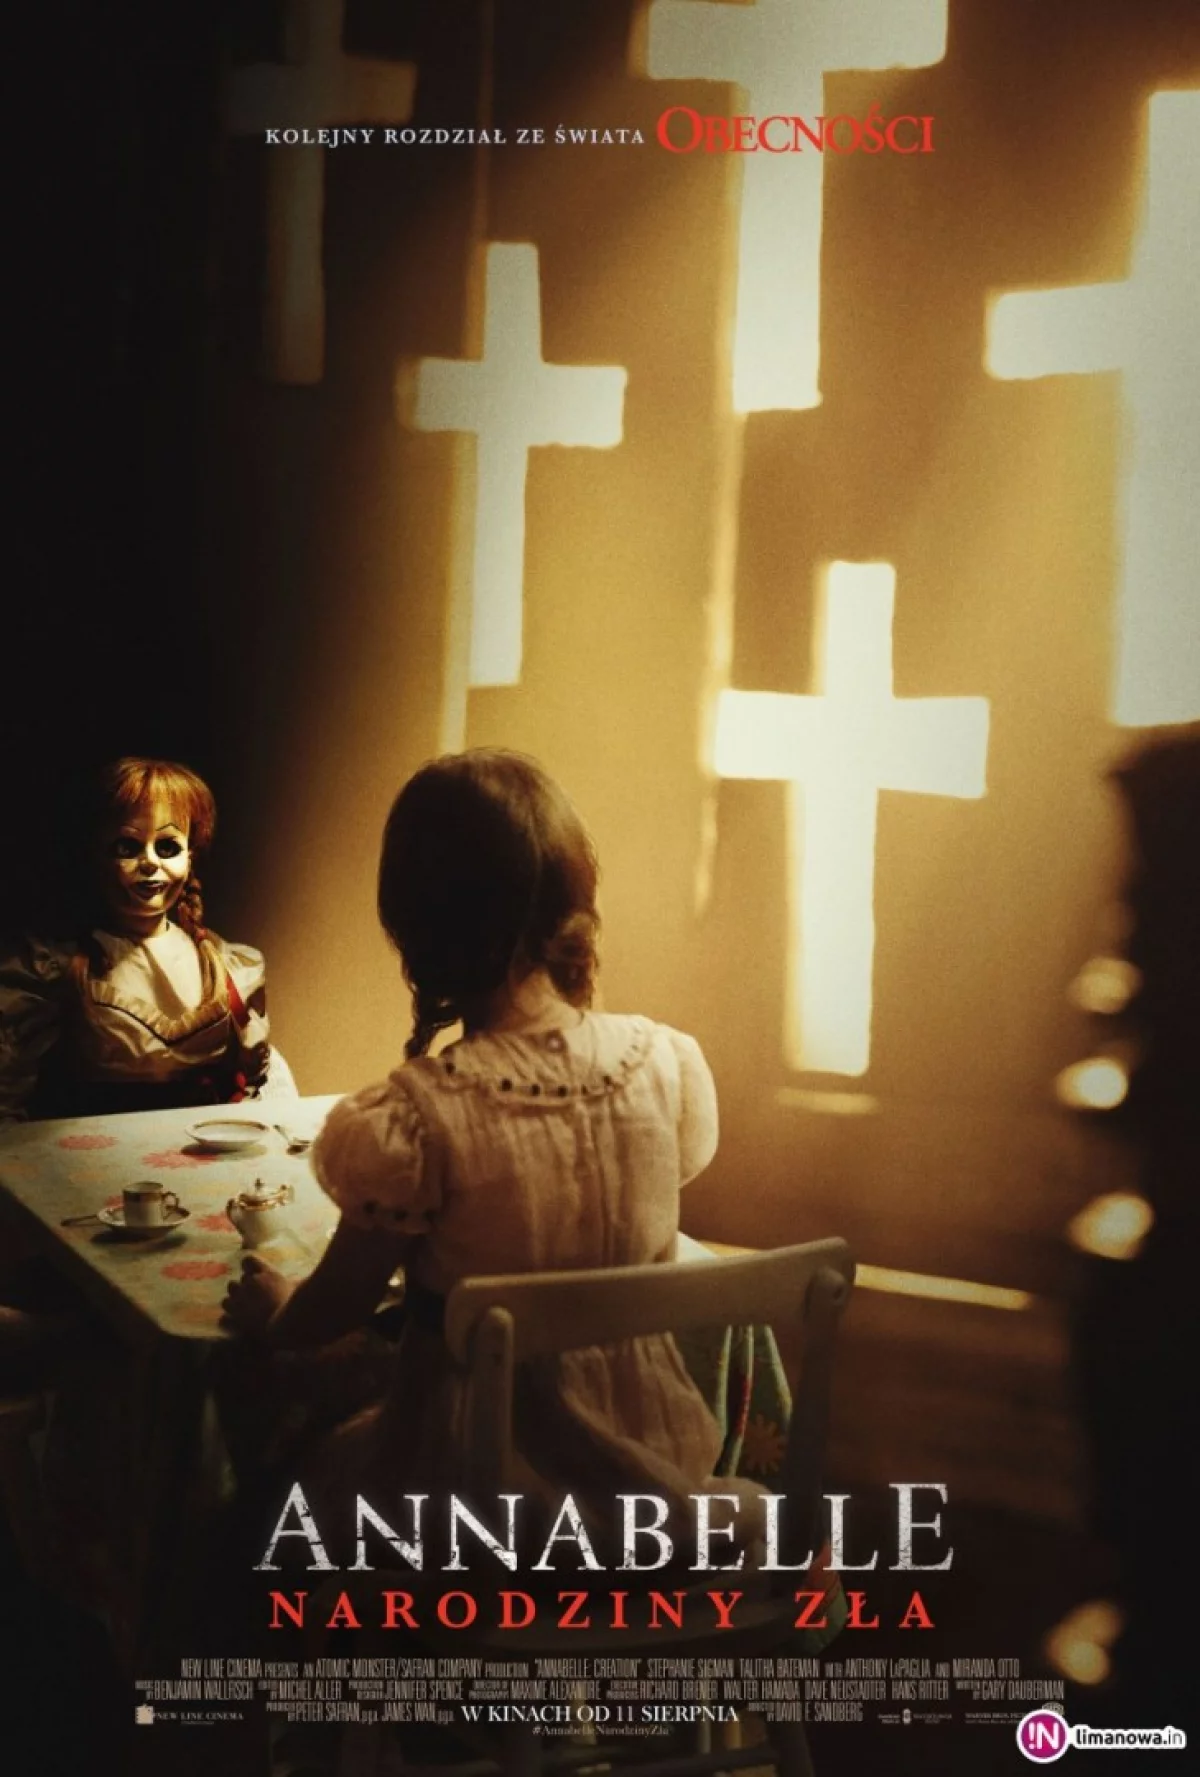 Premiera w kinie Klaps - „Annabelle: Narodziny zła” na ekranie od 11 sierpnia!